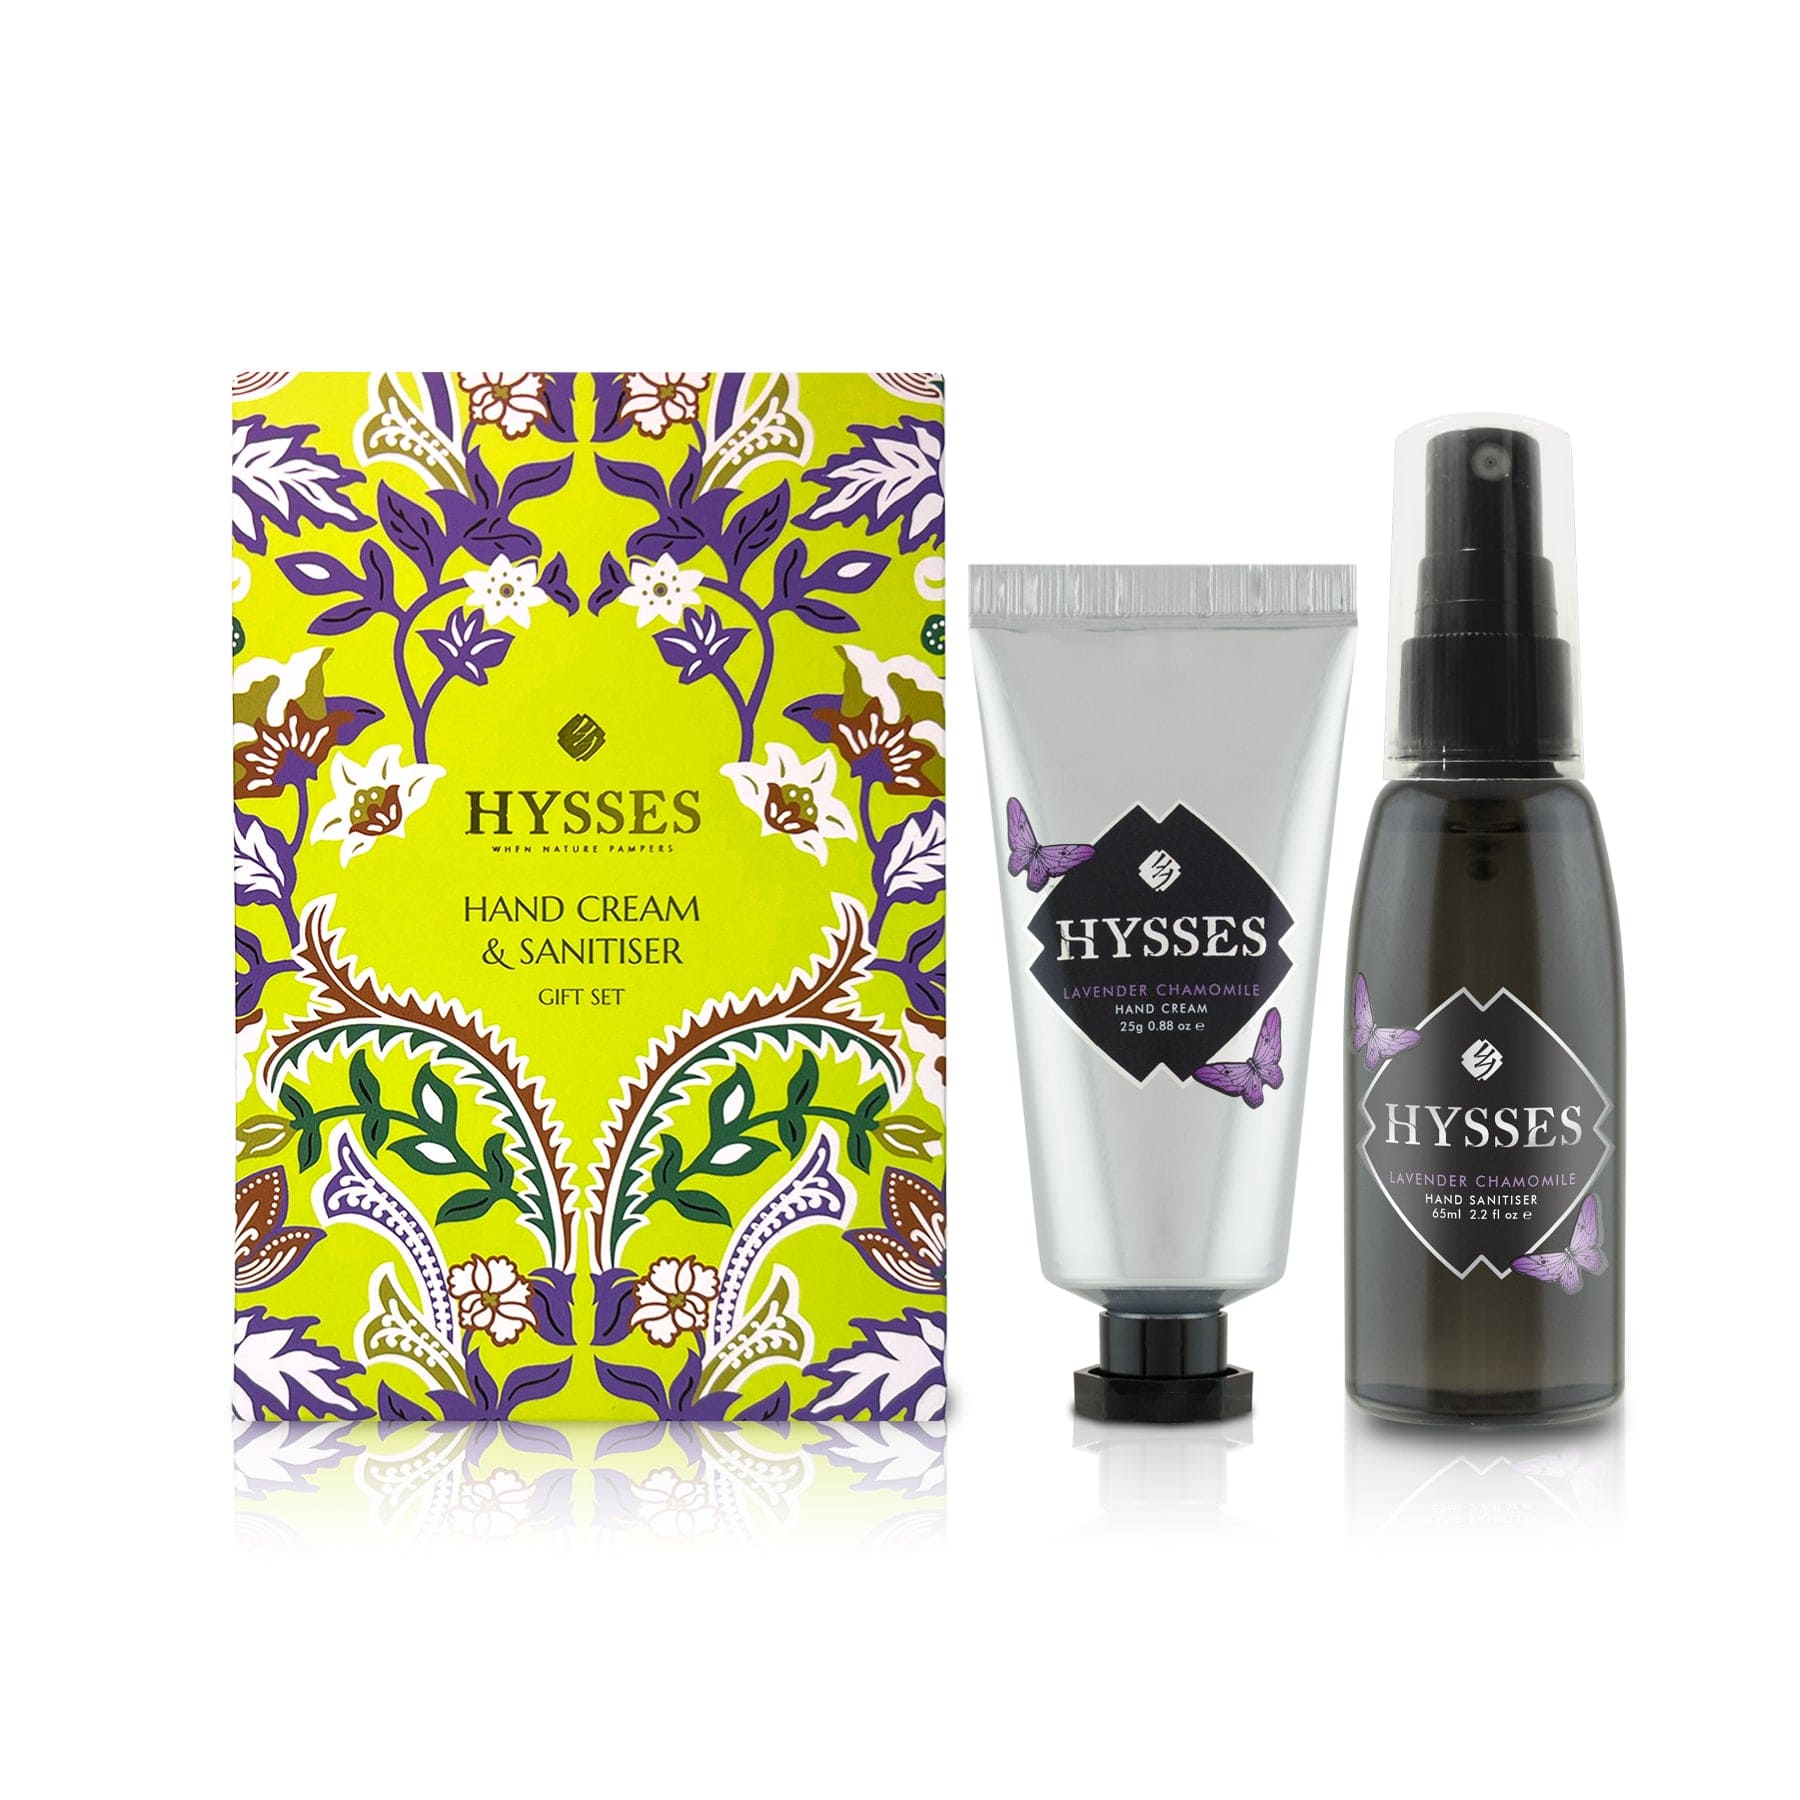 Hysses Body Care Lavender Chamomile Travel Gift Set (Hand Cream & Hand Sanitiser) Lavender Chamomile